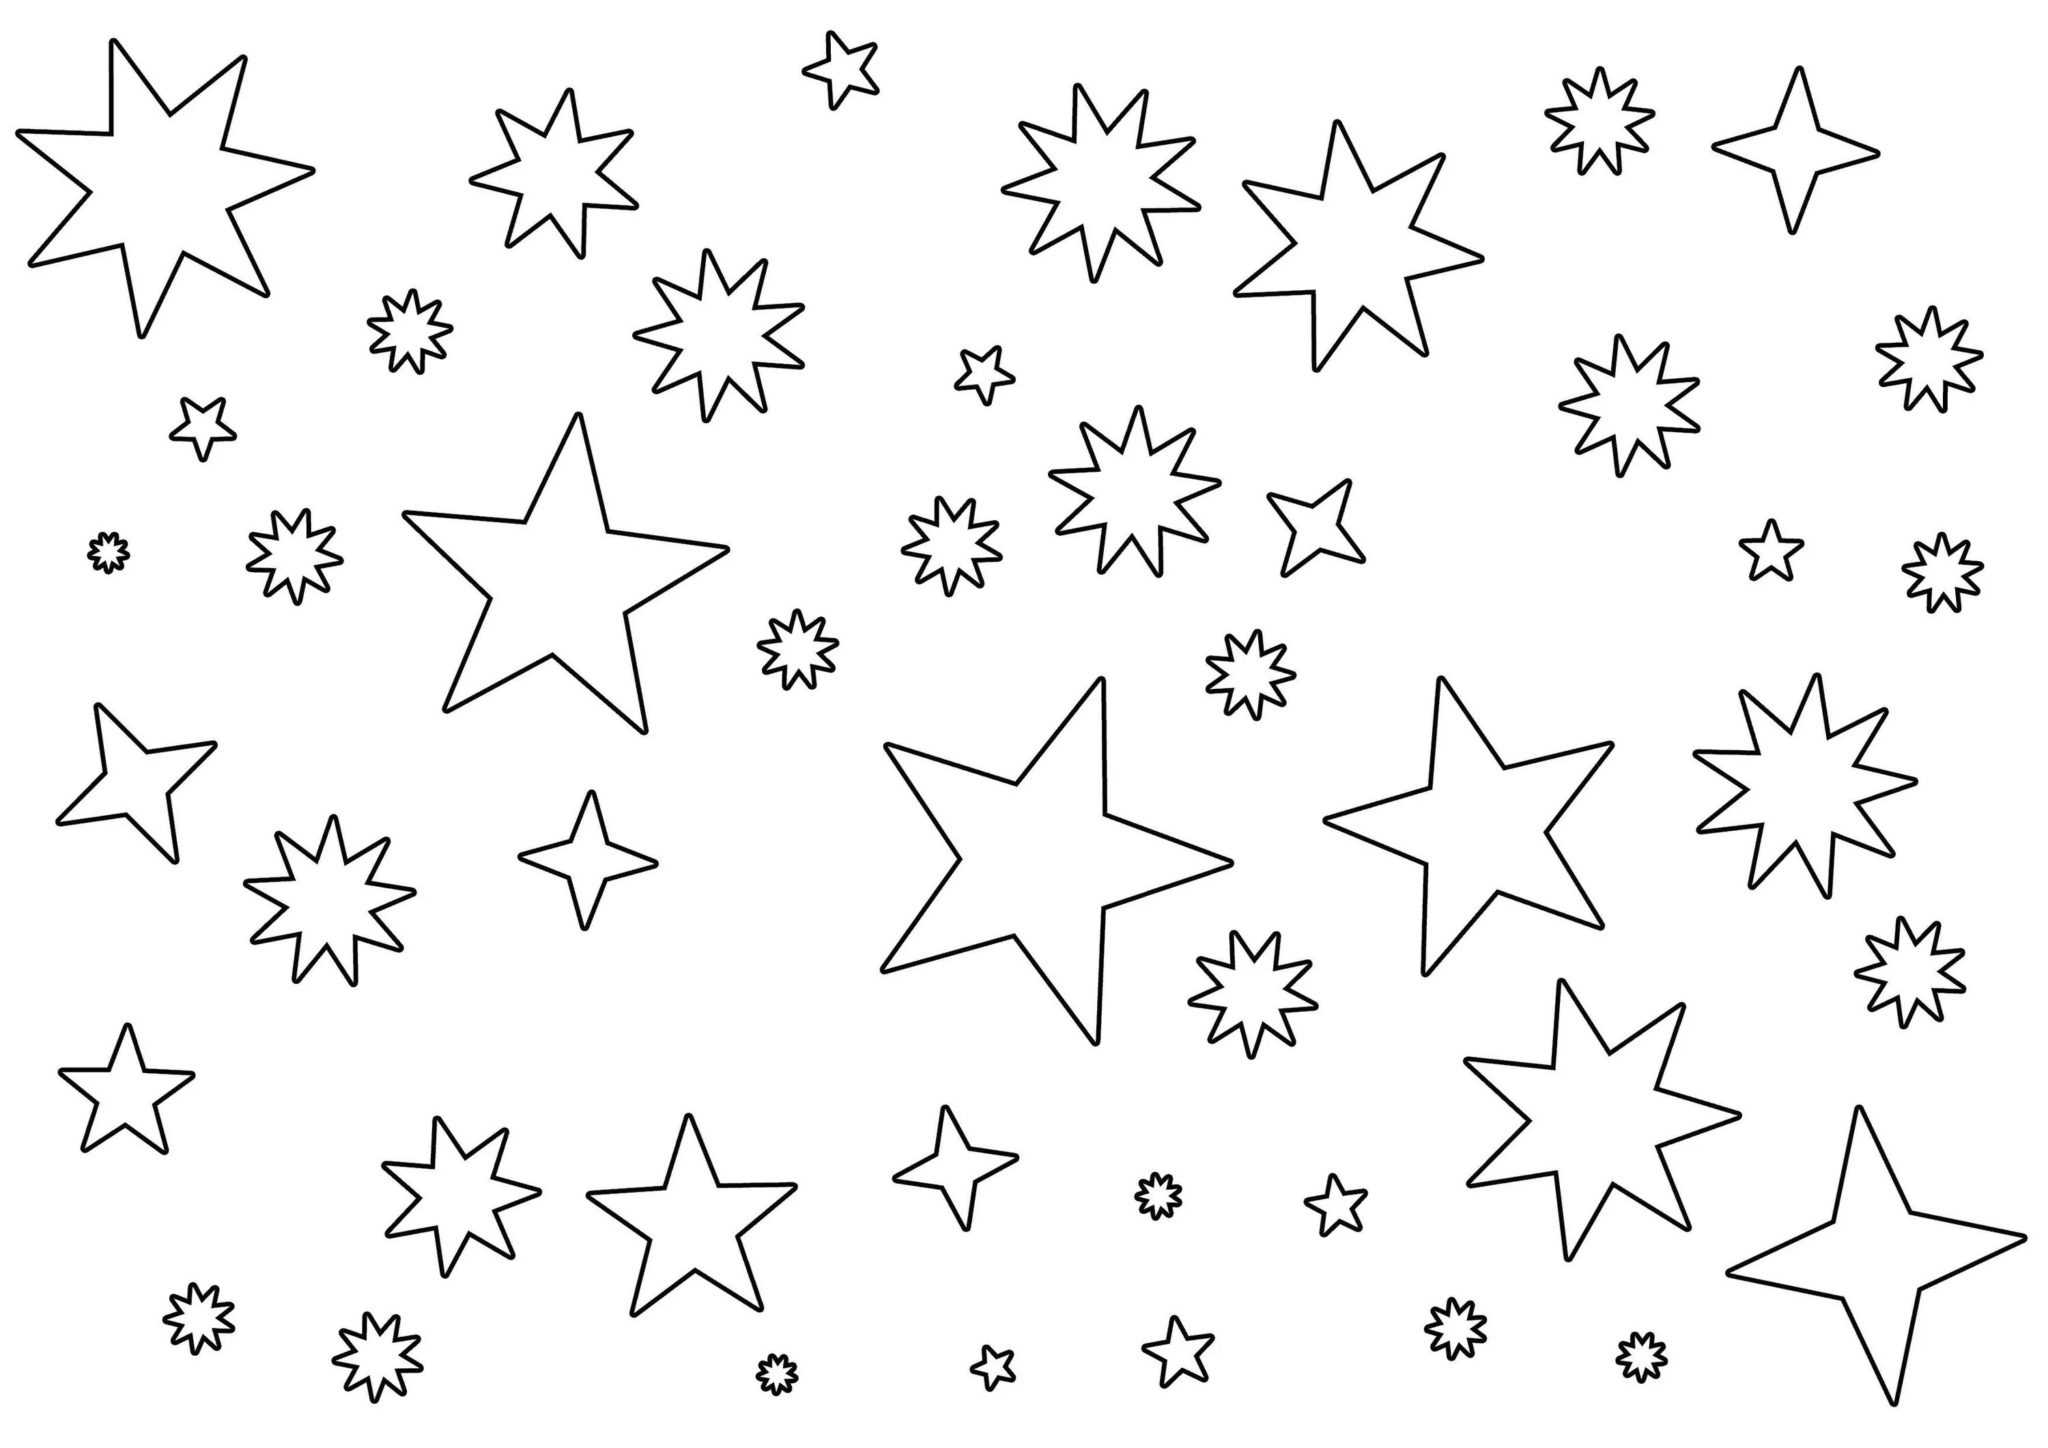 Звезда шаблон для вырезания из бумаги, трафарет звезды распечатать 50+ идей